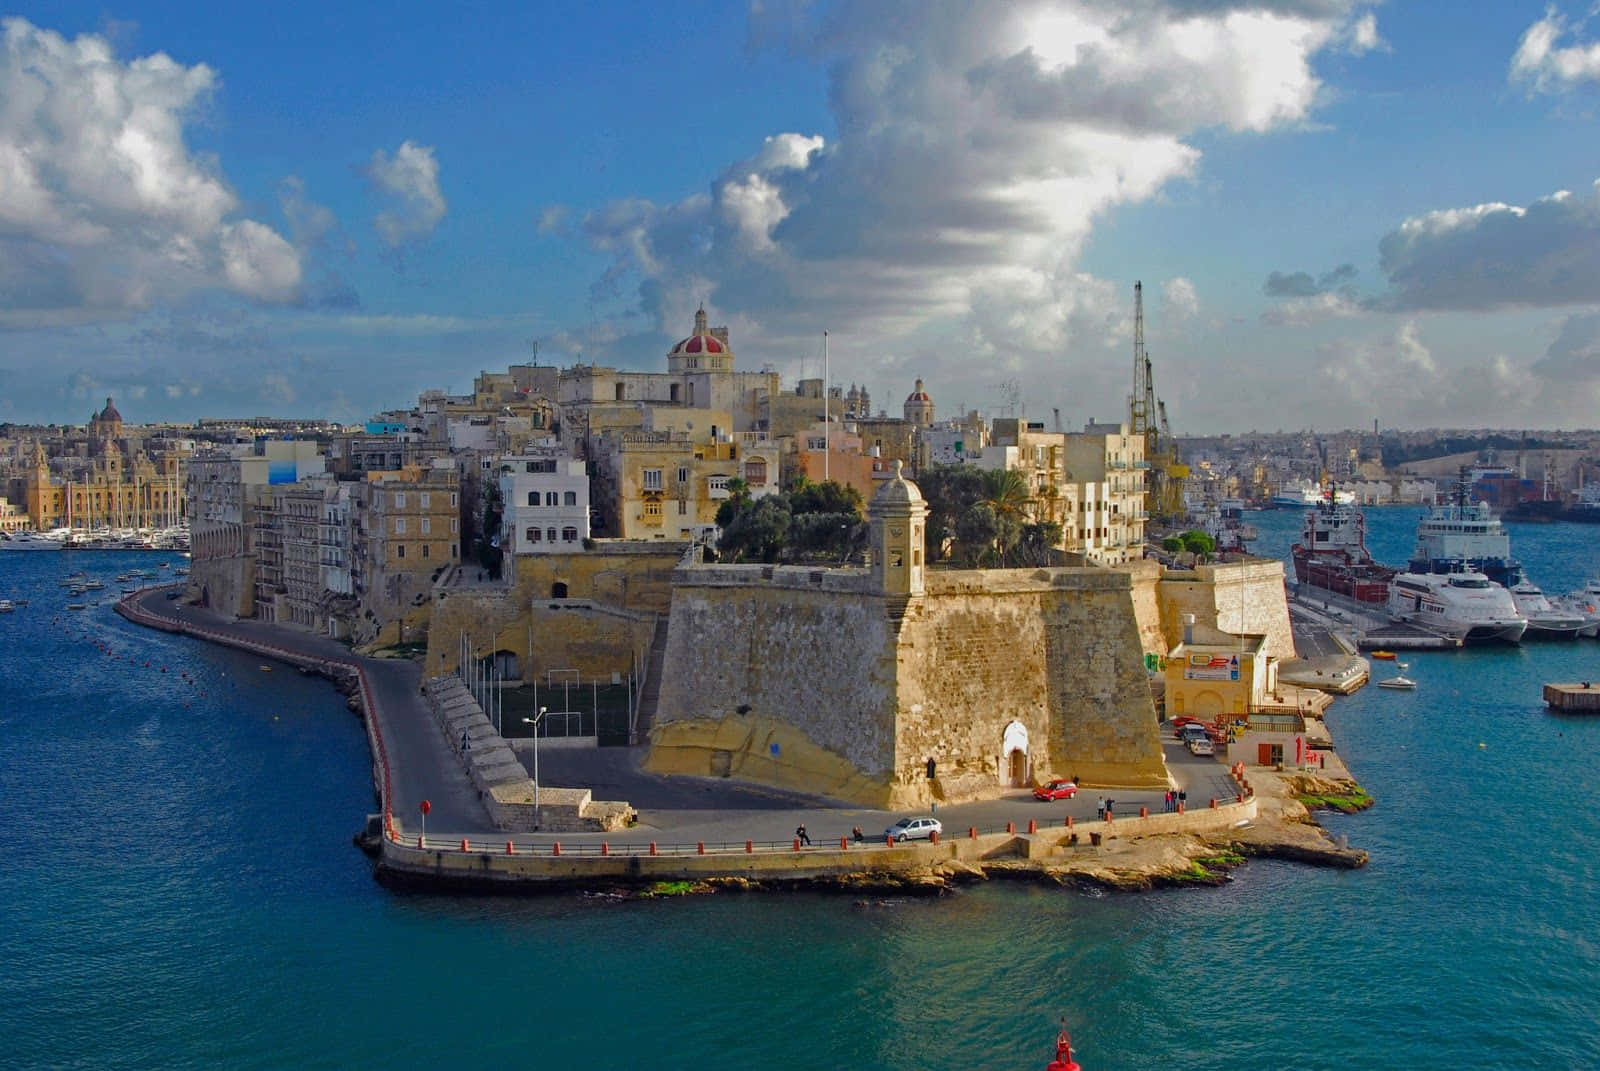 Impresionantevista De La Bahía De St. Julian's En Malta.